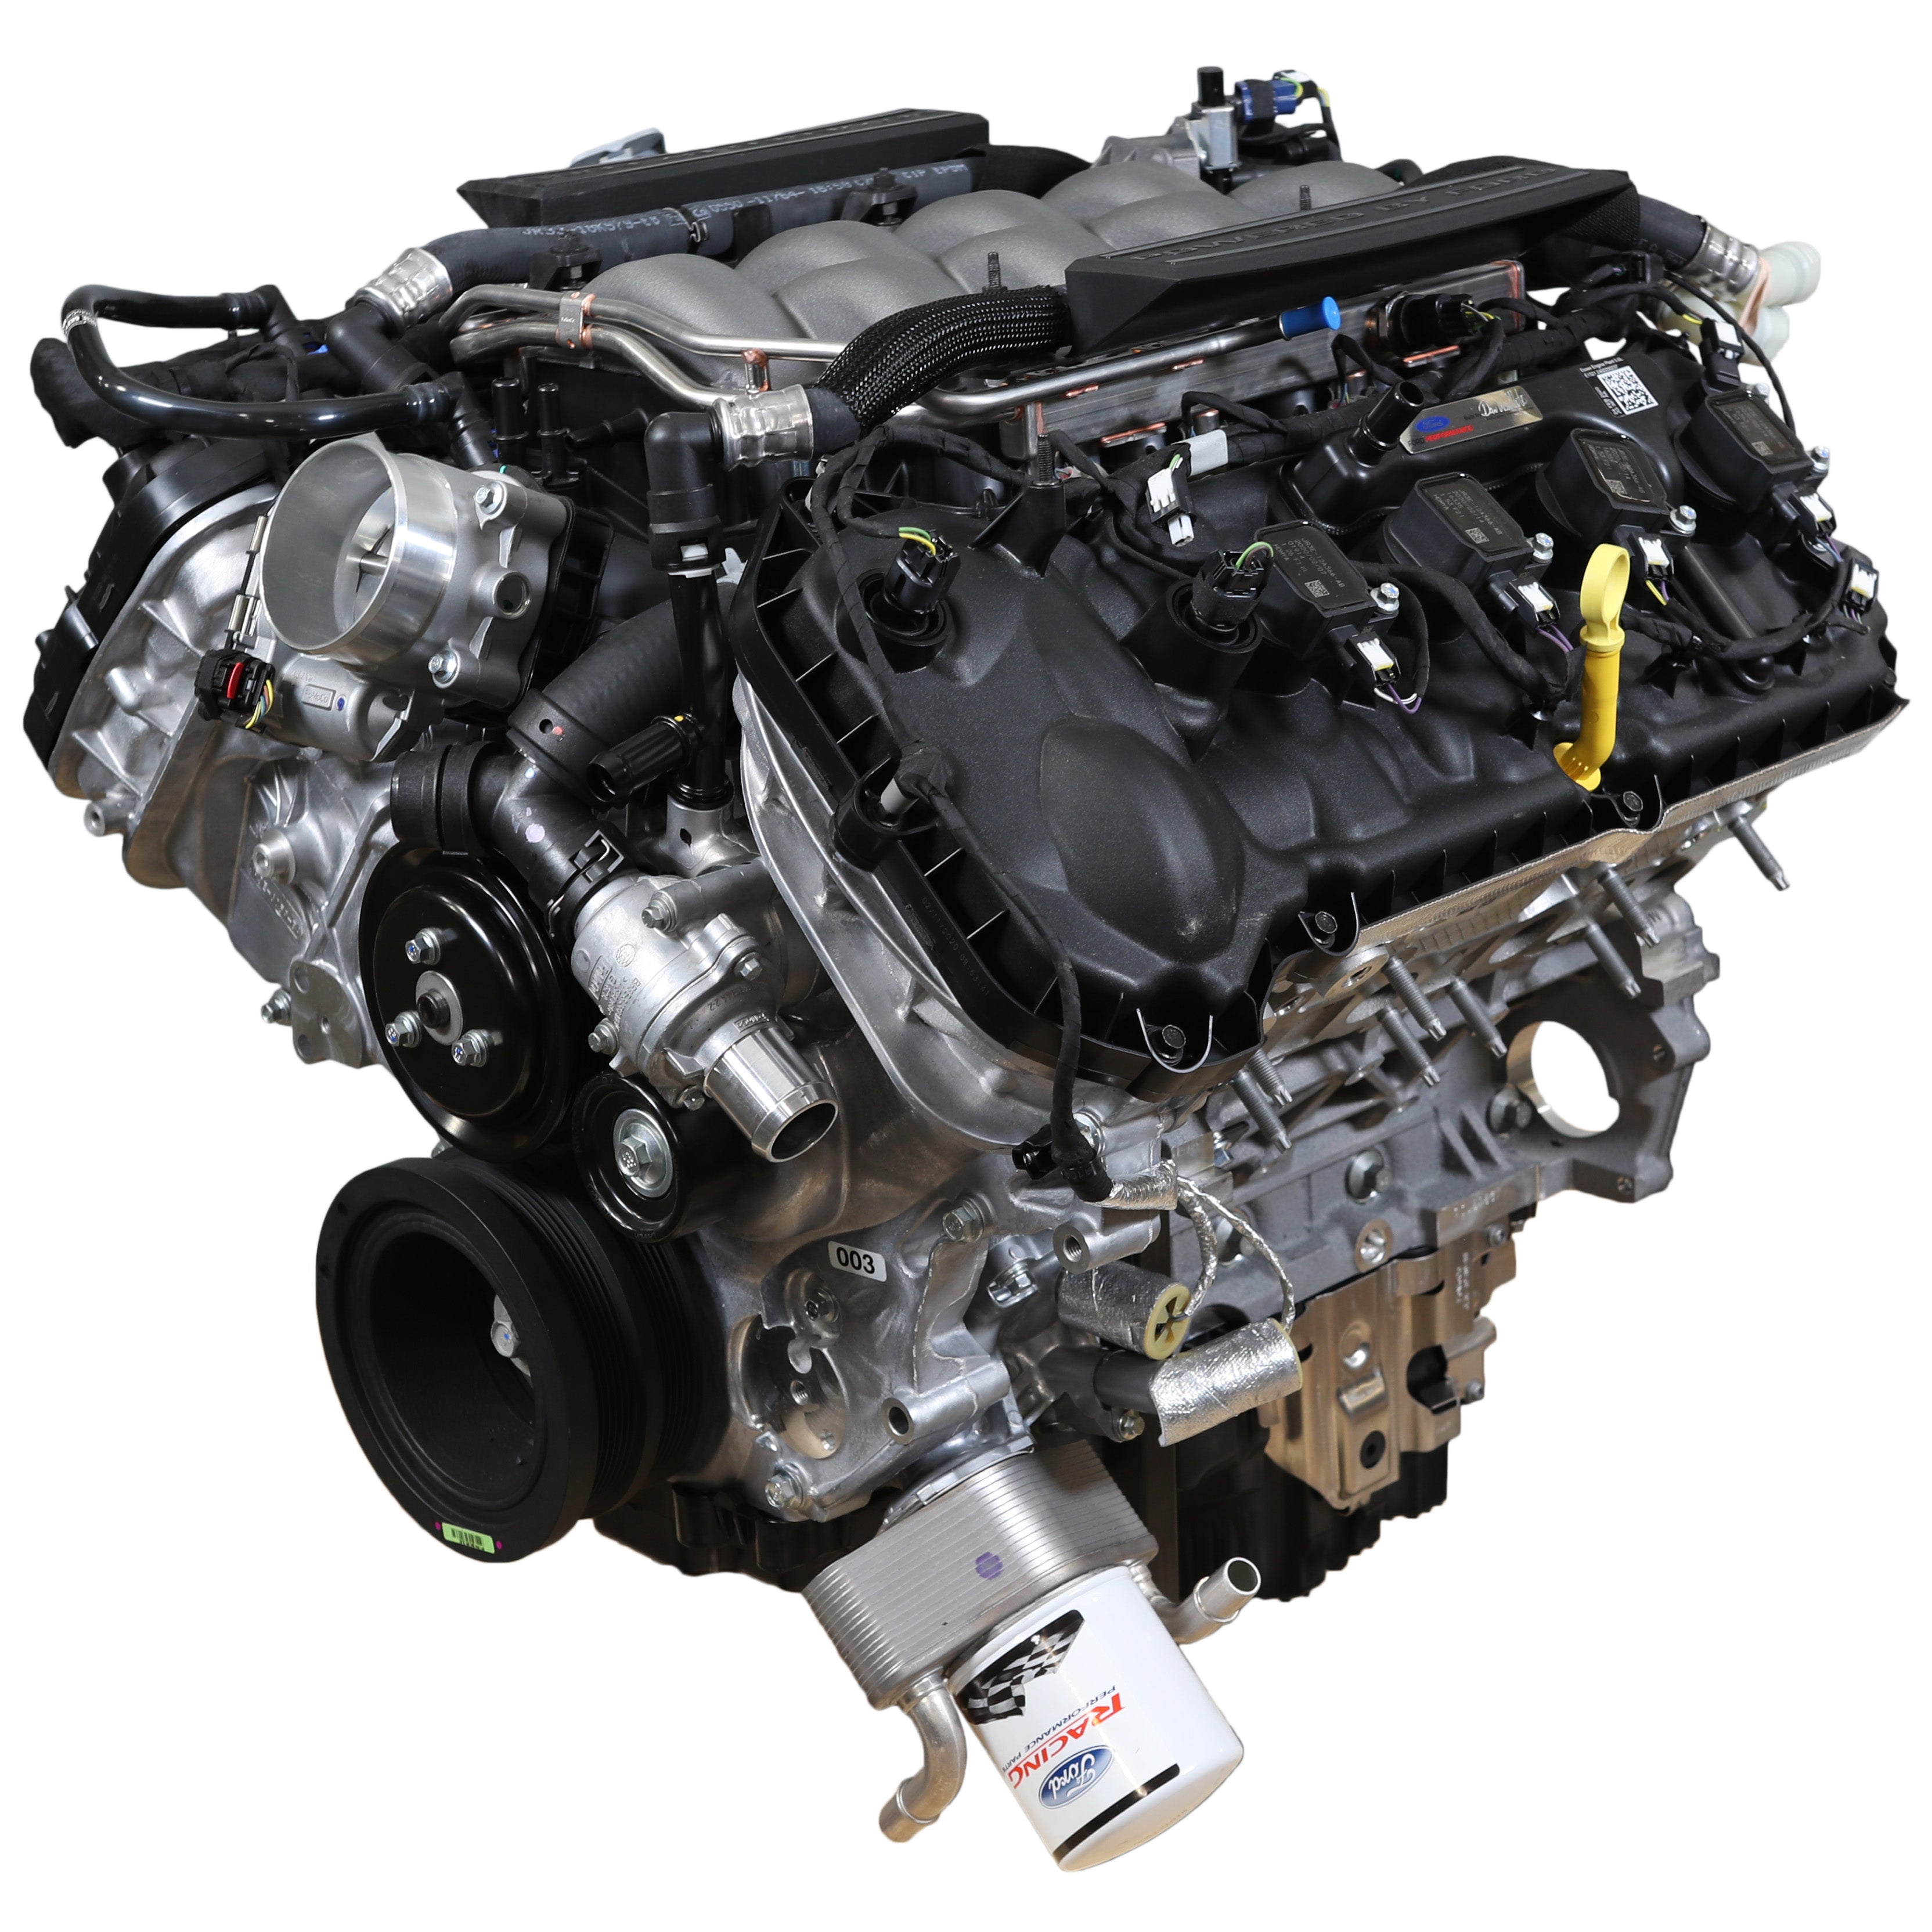 Ford Performance 5.0L "Aluminator" Gen 3 Kistenmotor - Niedrige Kompression für FI-Builds